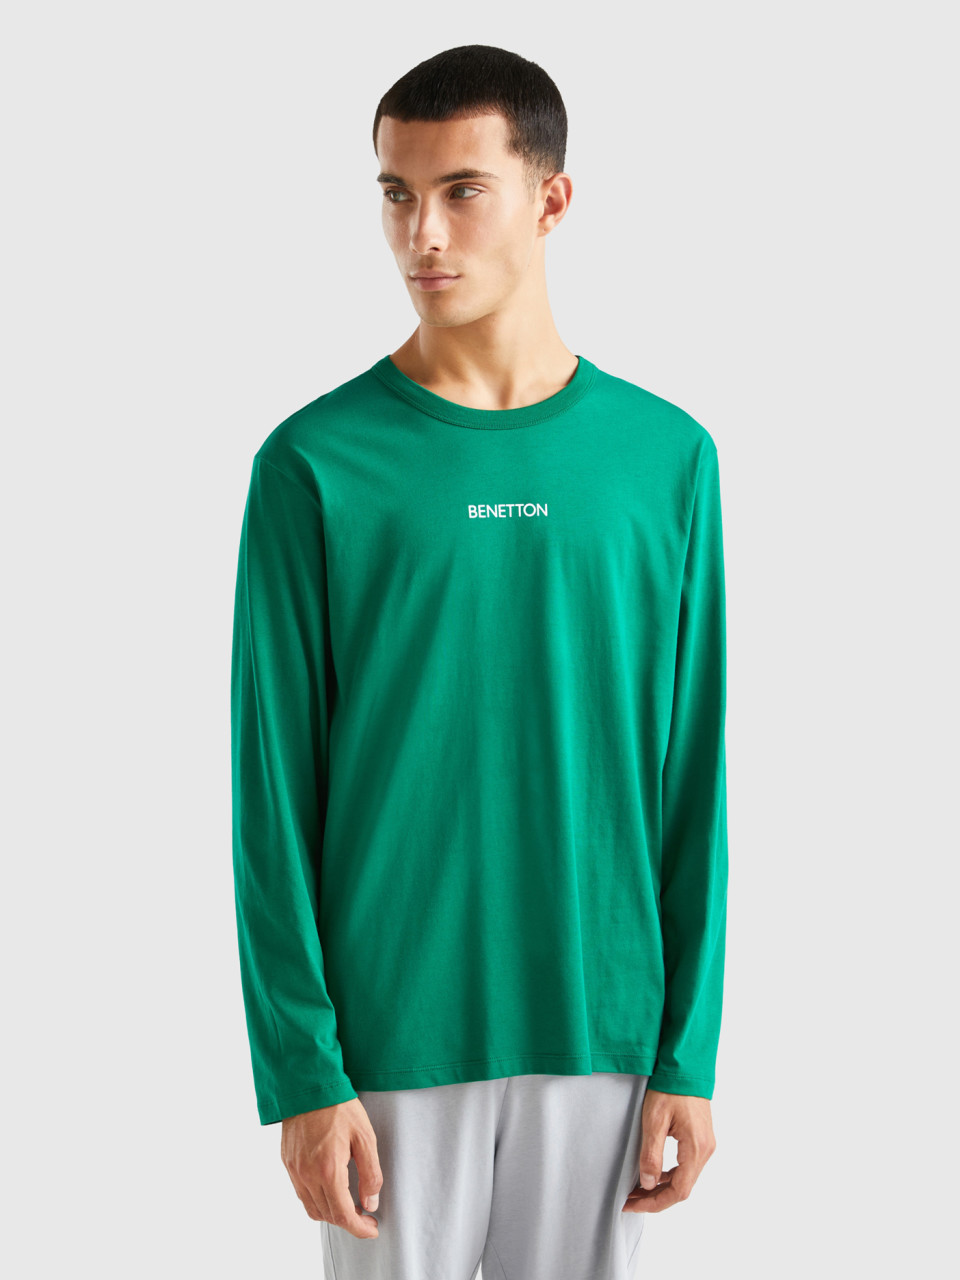 Benetton, Haut 100 % Coton À Manches Longues, Vert, Homme